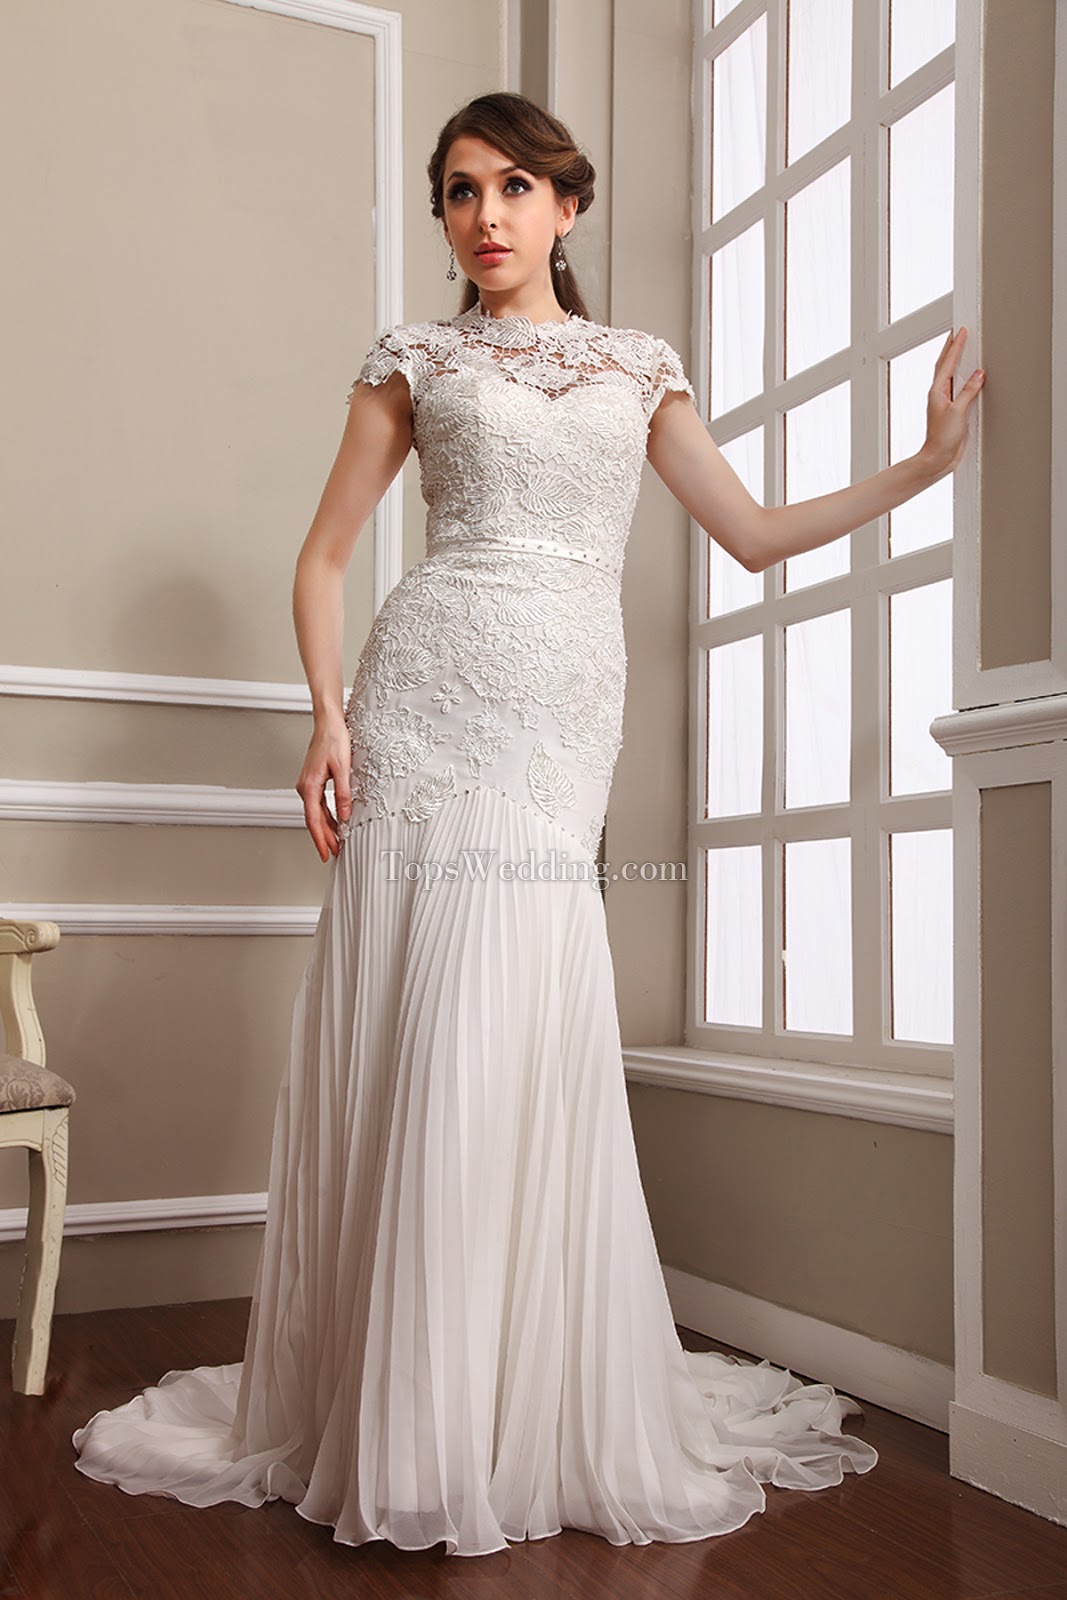 Boho Wedding Dress with Empire Waist - 979 | Empire waist wedding dress, Empire  wedding dress, Essense of australia wedding dresses